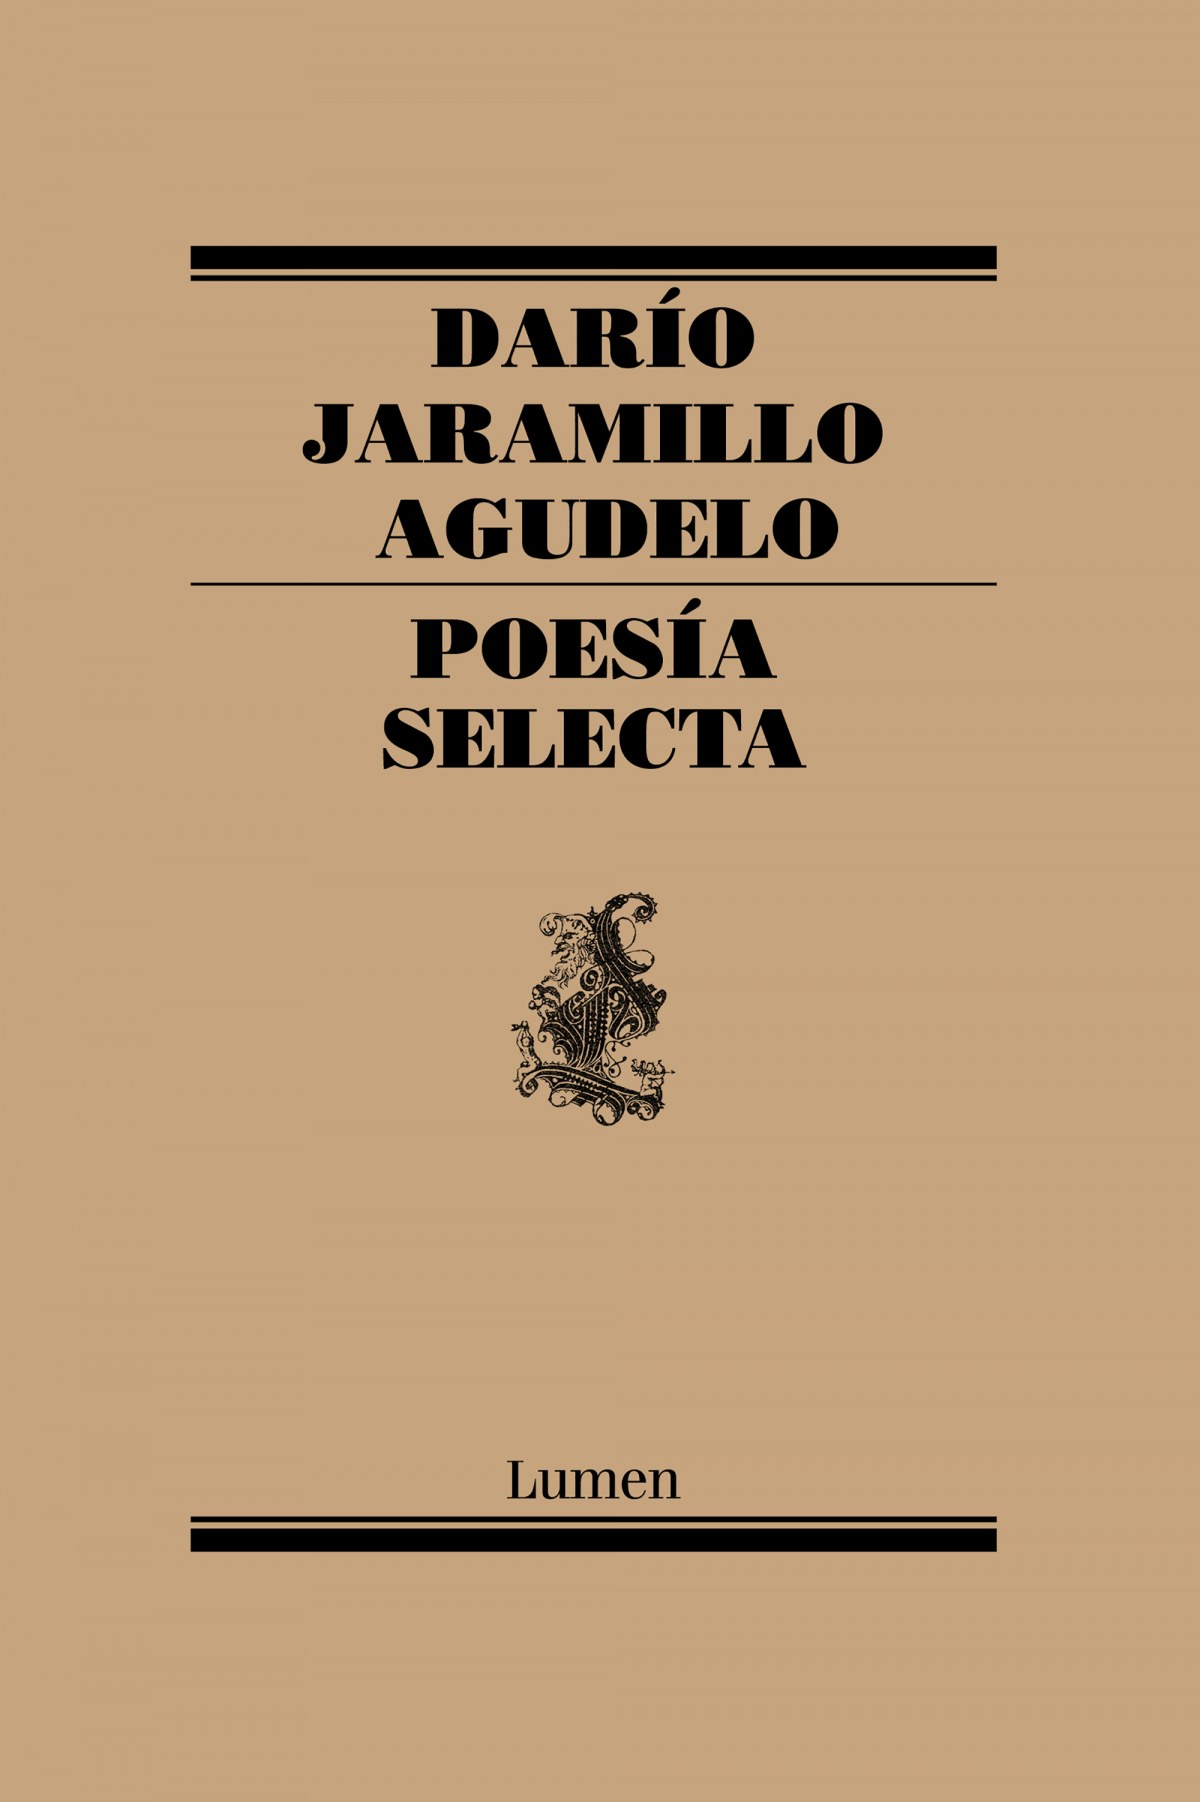 PoesÍa selecta - Jaramillo Agudelo, Dario